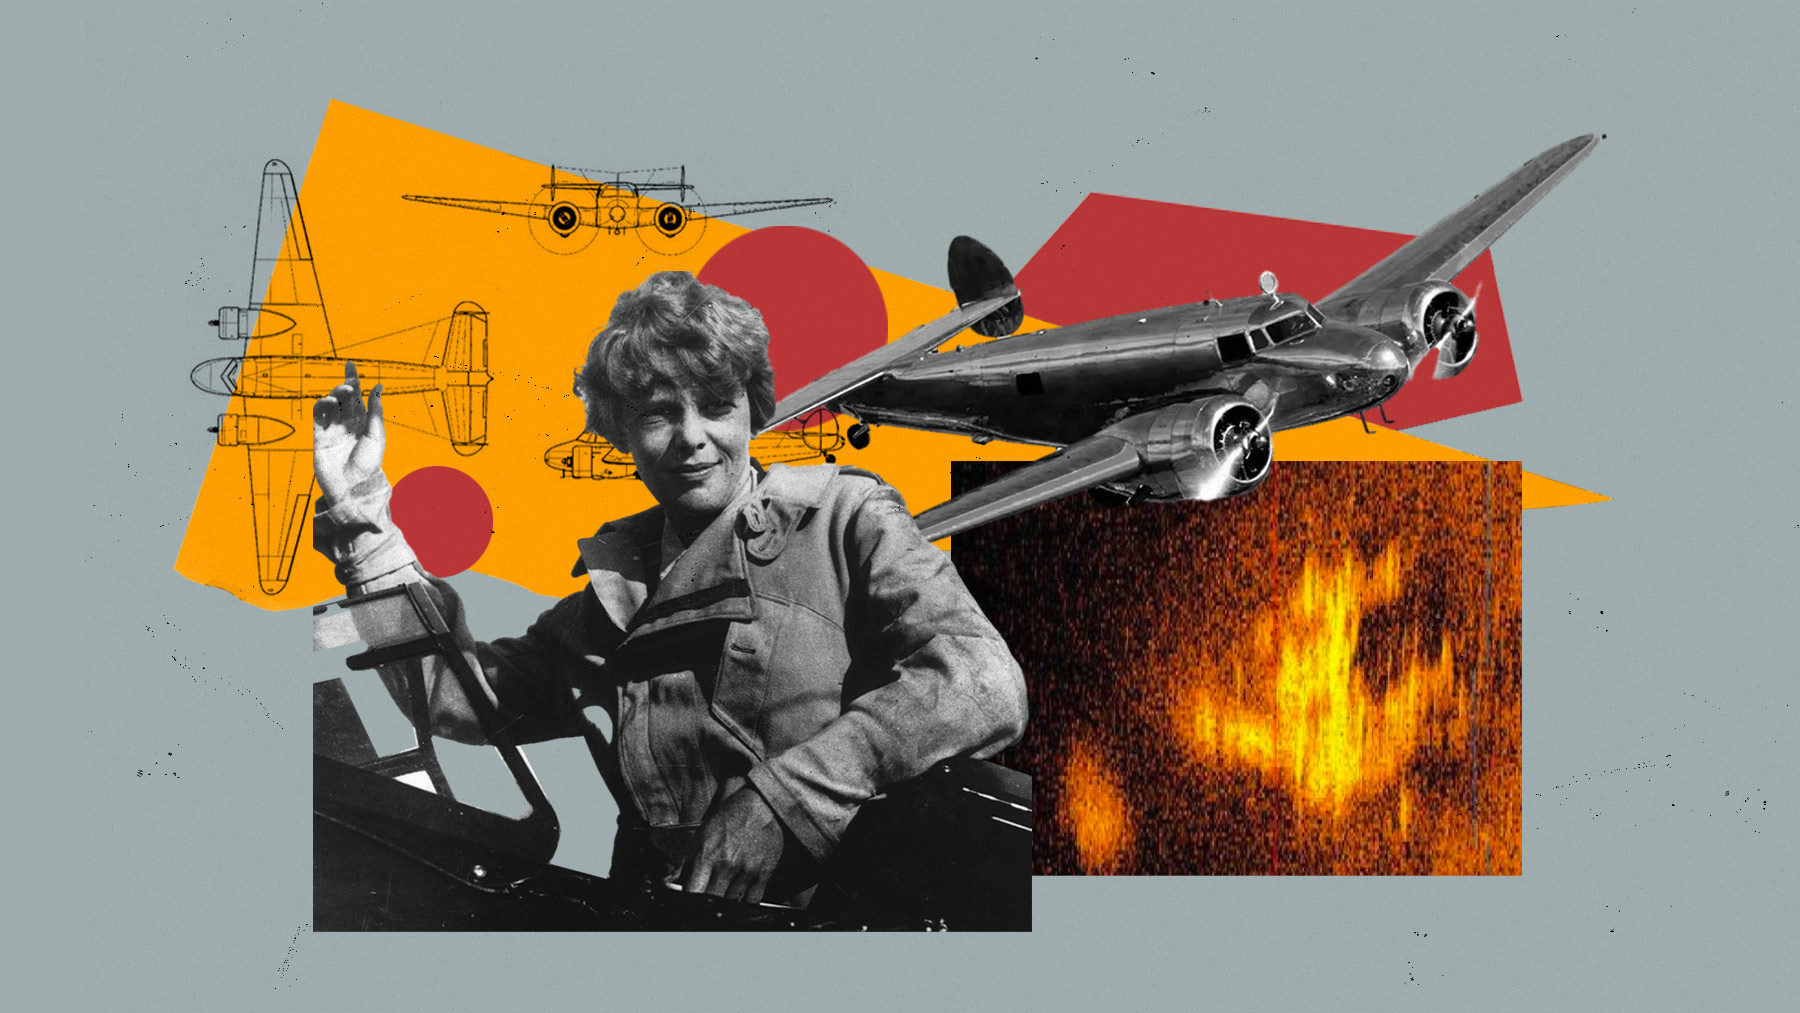 La pionera aviadora Amelia Earhart y su avión